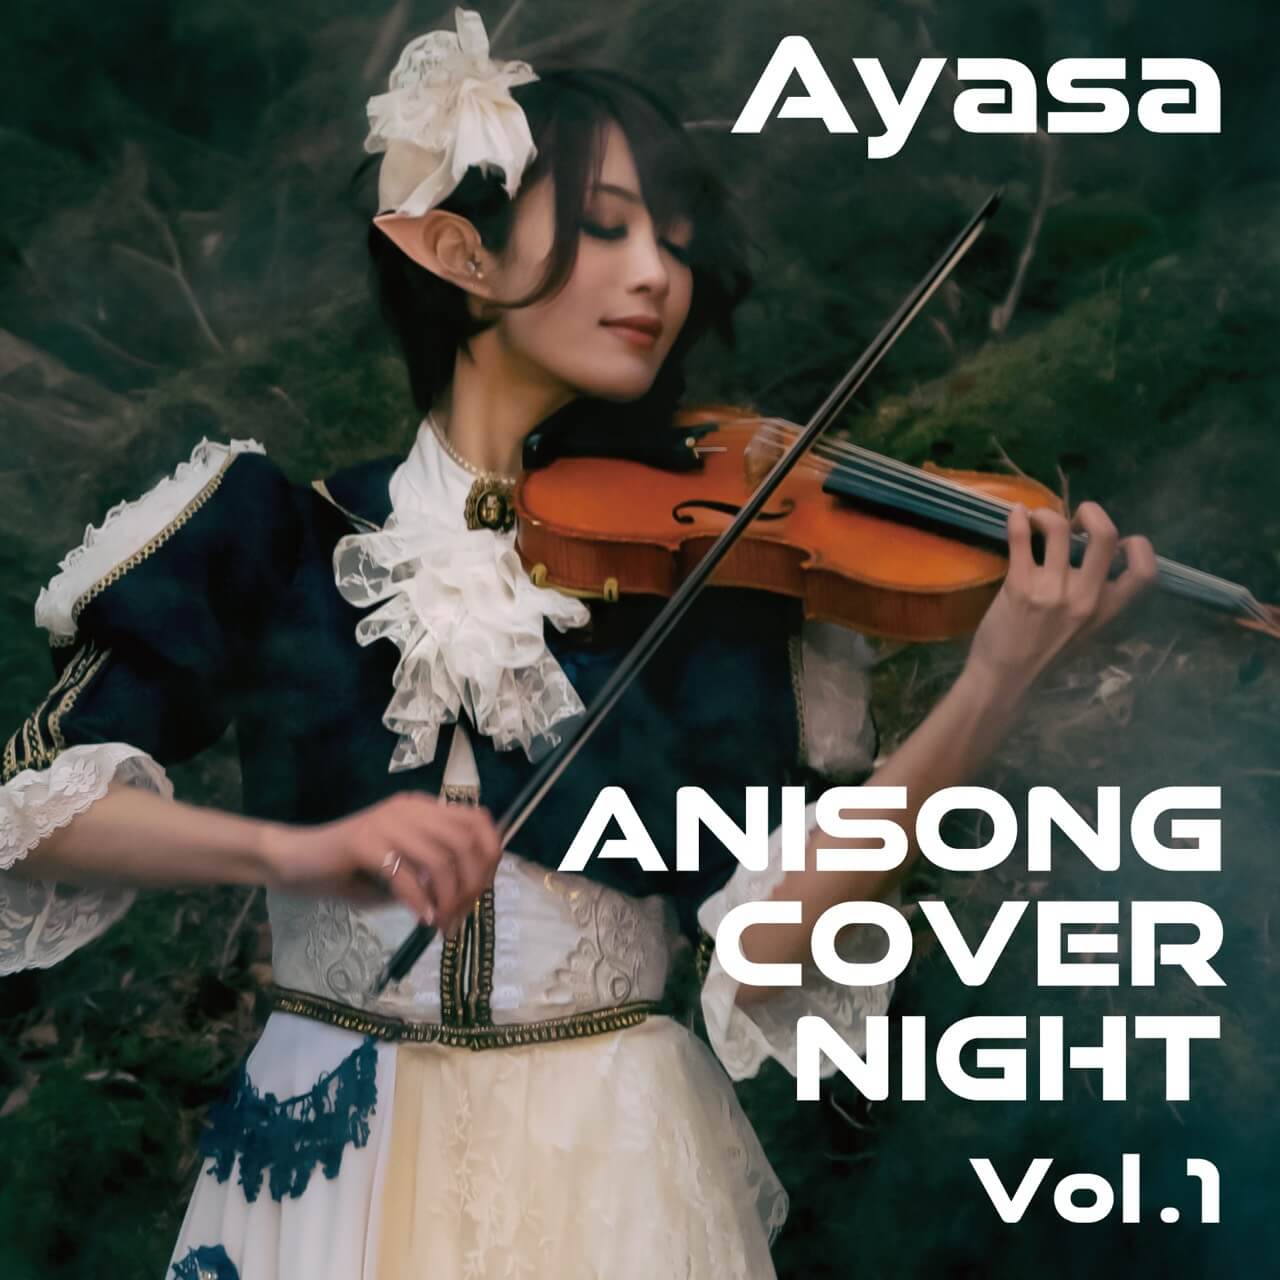 Ayasa初のアニソンカバーアルバム『ANISONG COVER NIGHT Vol.1』を配信サムネイル画像!